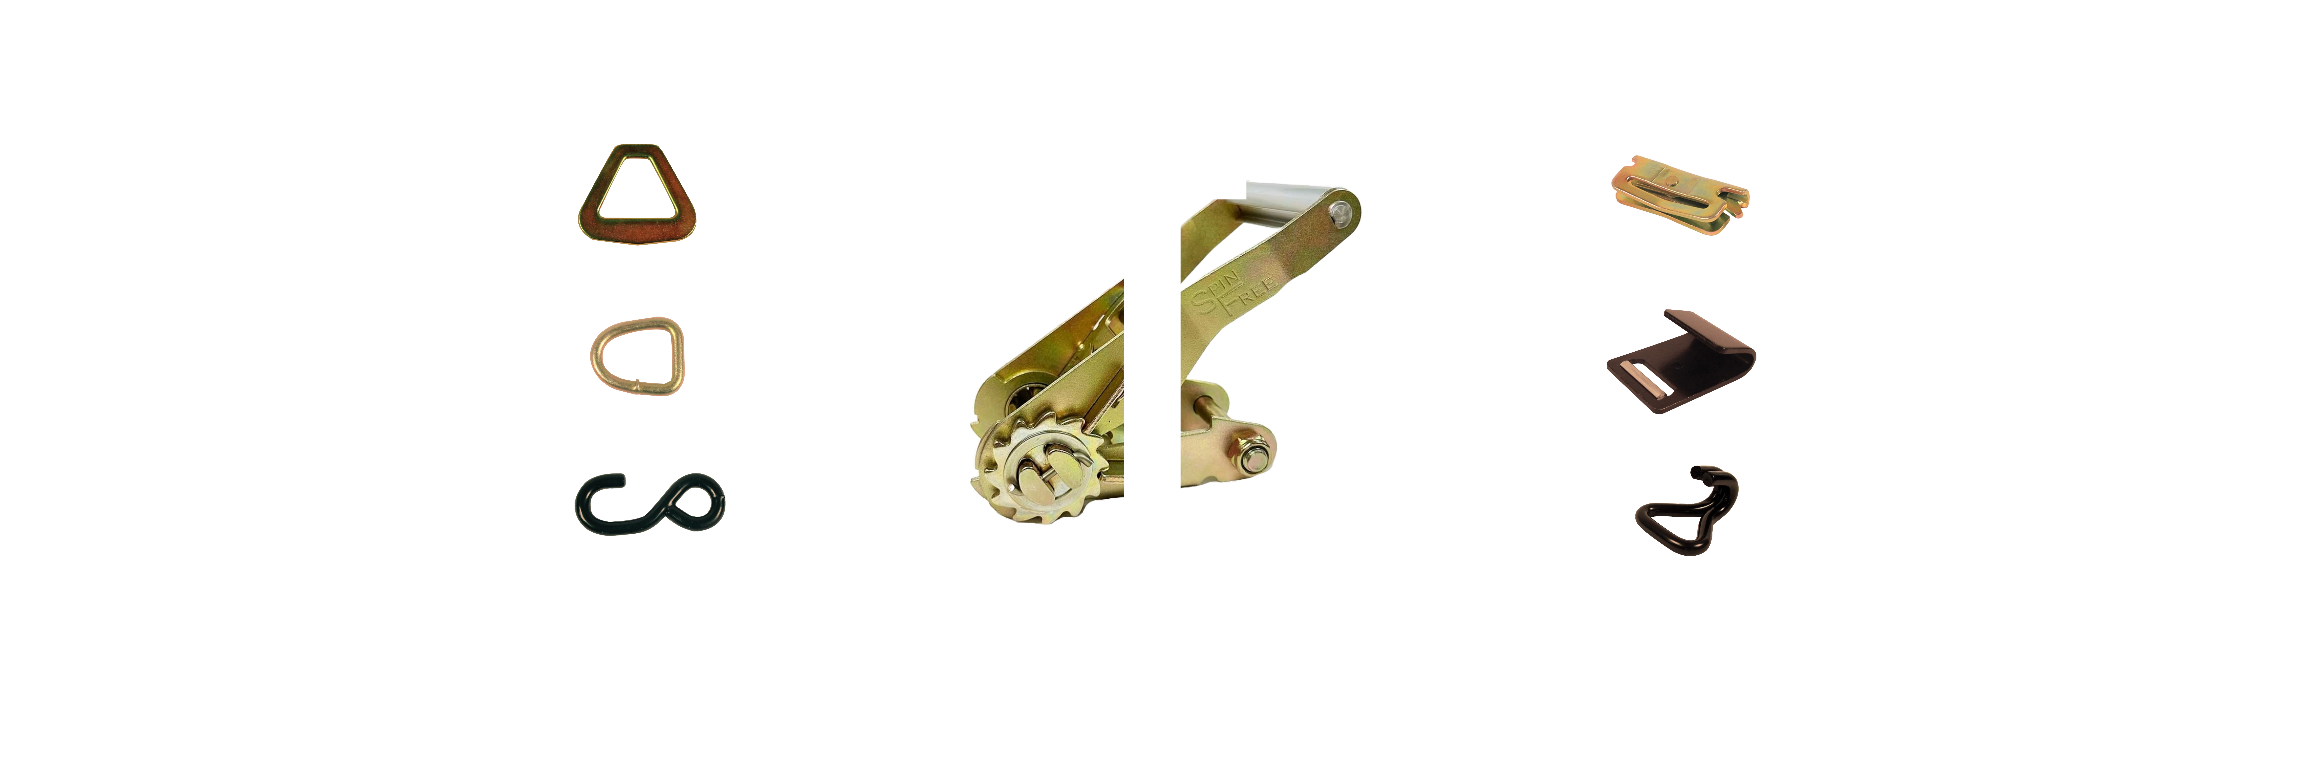 K-Links CTS Production – Slide 3